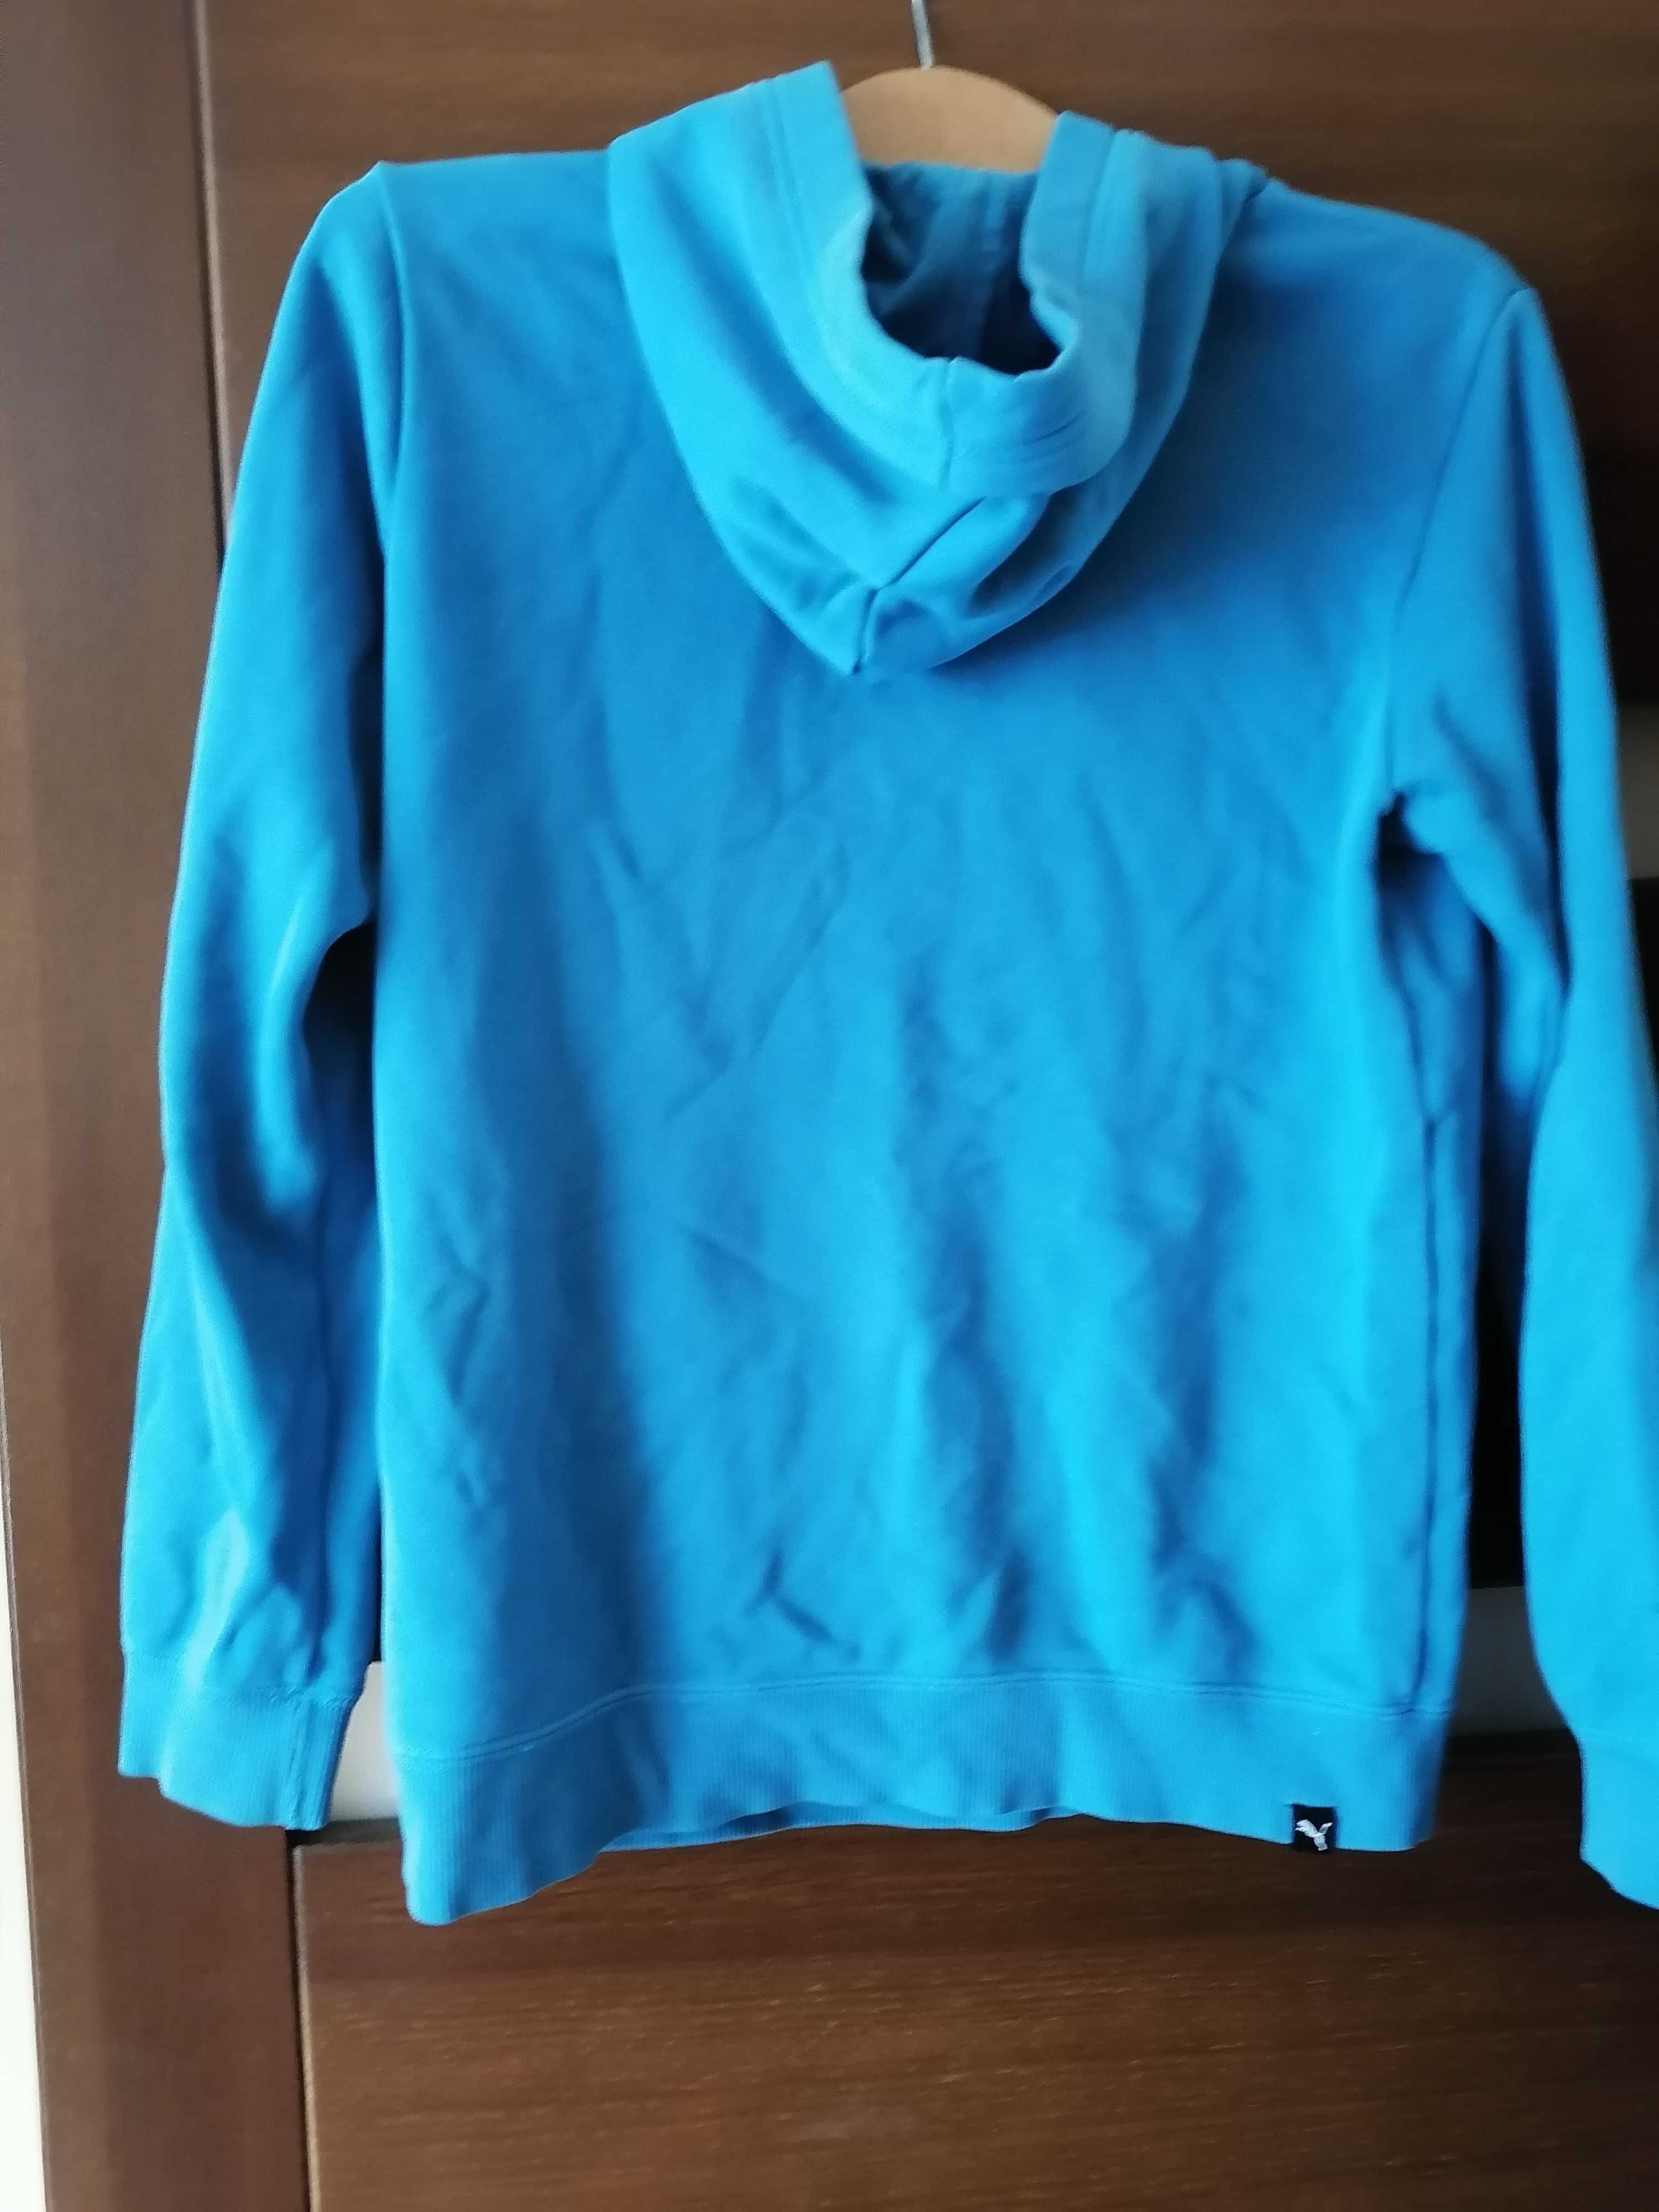 Bluza PUMA 164 niebieska z kapturem duża kieszeń